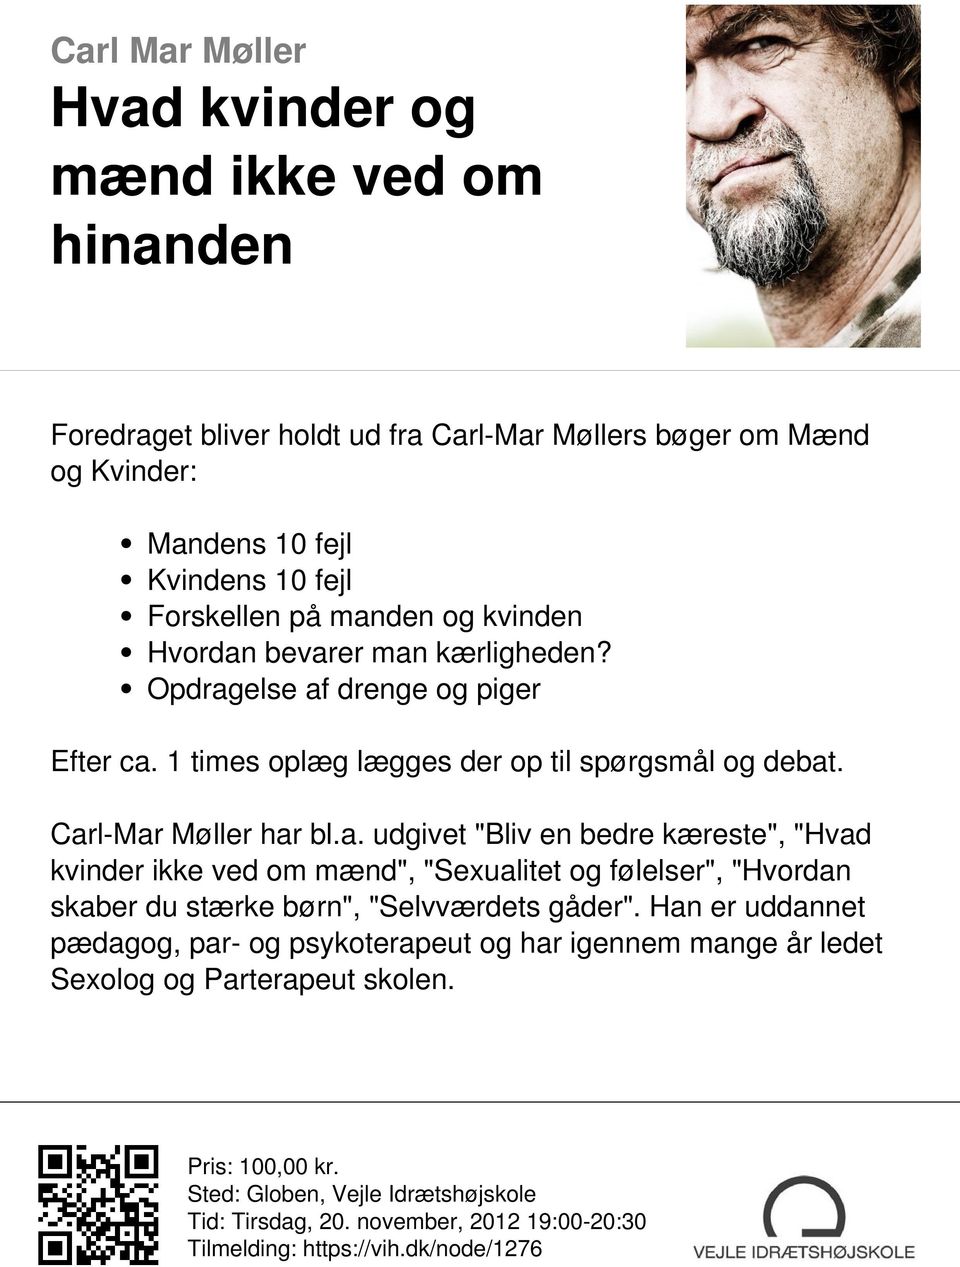 Carl-Mar Møller har bl.a. udgivet "Bliv en bedre kæreste", "Hvad kvinder ikke ved om mænd", "Sexualitet og følelser", "Hvordan skaber du stærke børn", "Selvværdets gåder".